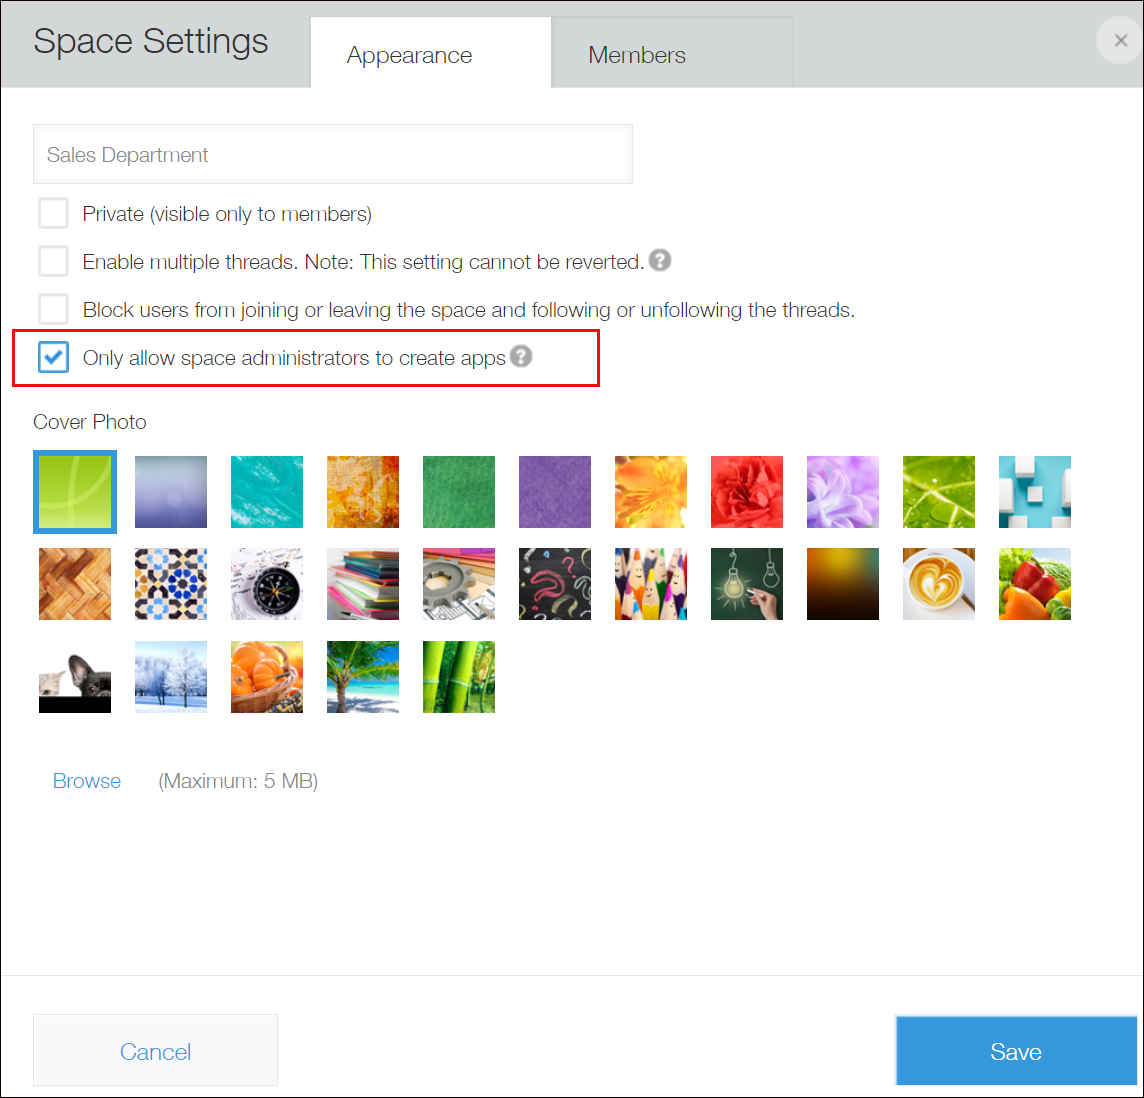 Captura de pantalla: "Solo permita a los administradores de espacio crear apps" aparece resaltado en rojo en la pantalla "Ajustes del espacio"